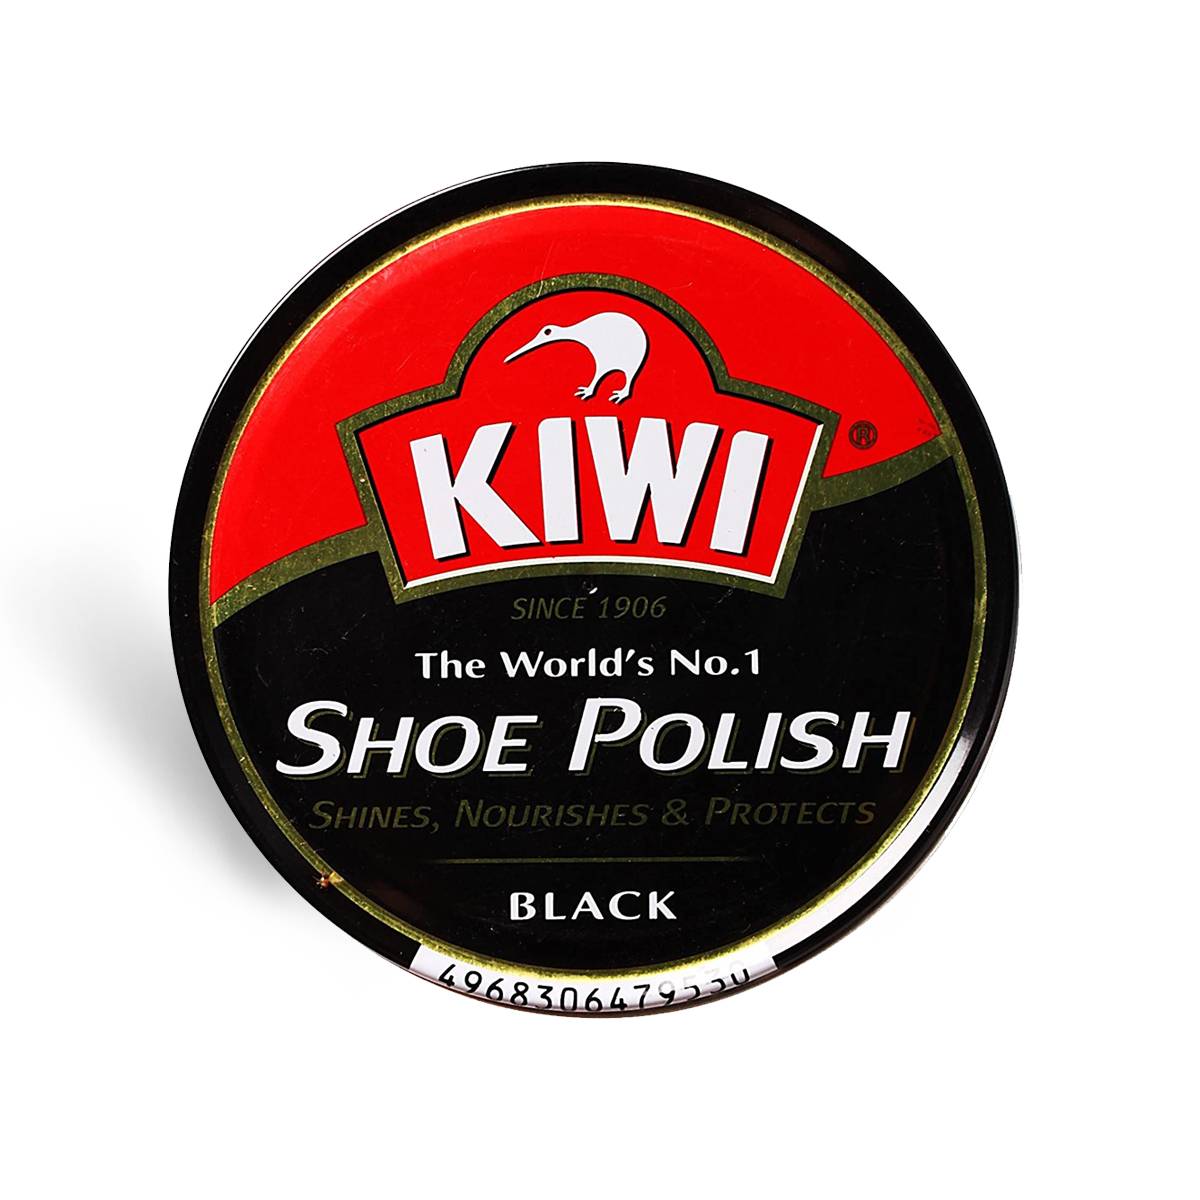 Shoe Polish Black Leather 15g(kiwi)